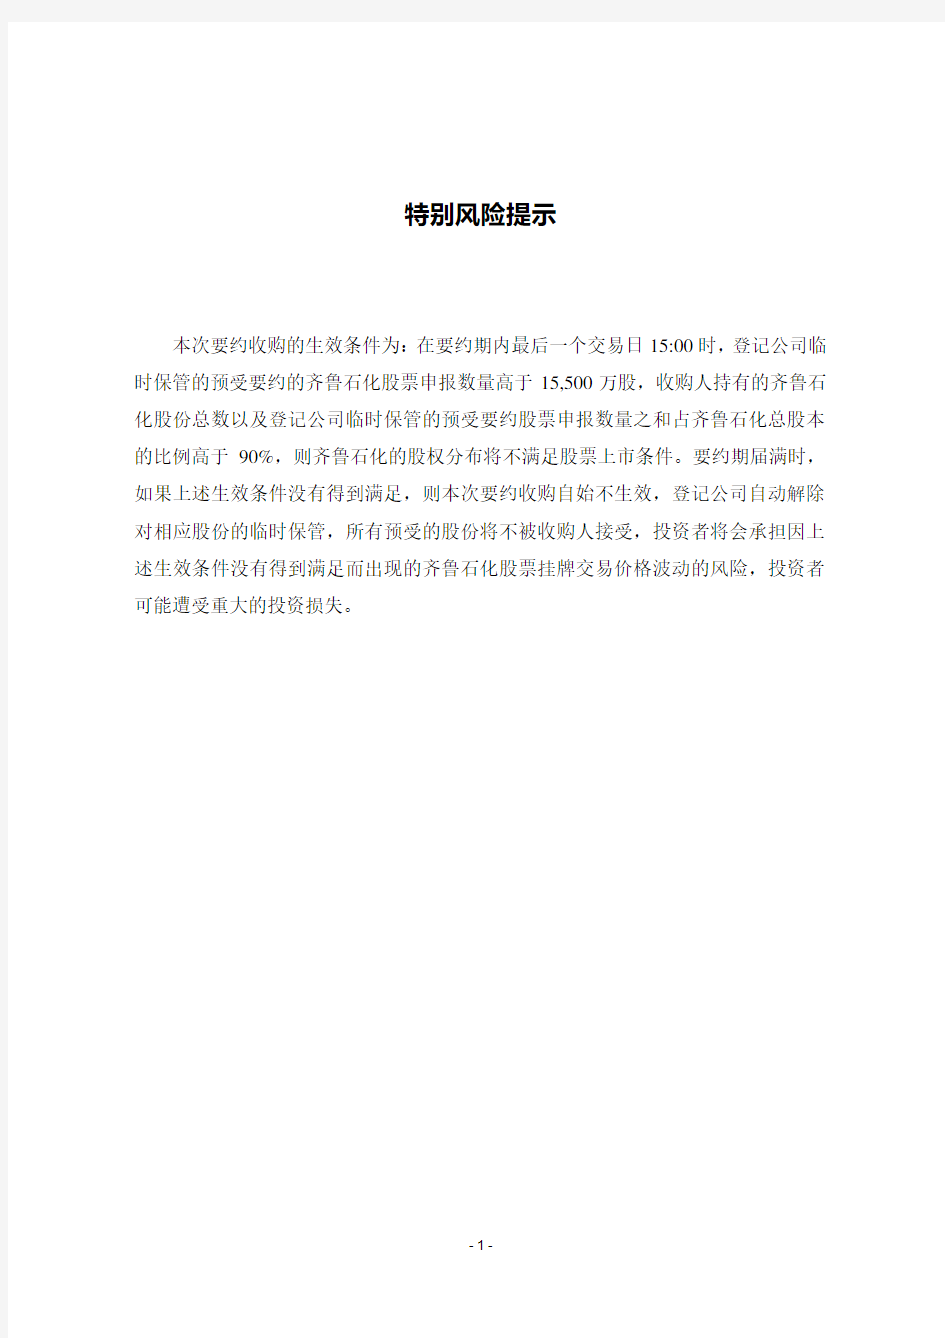 中国石化齐鲁股份有限公司 要约收购报告书